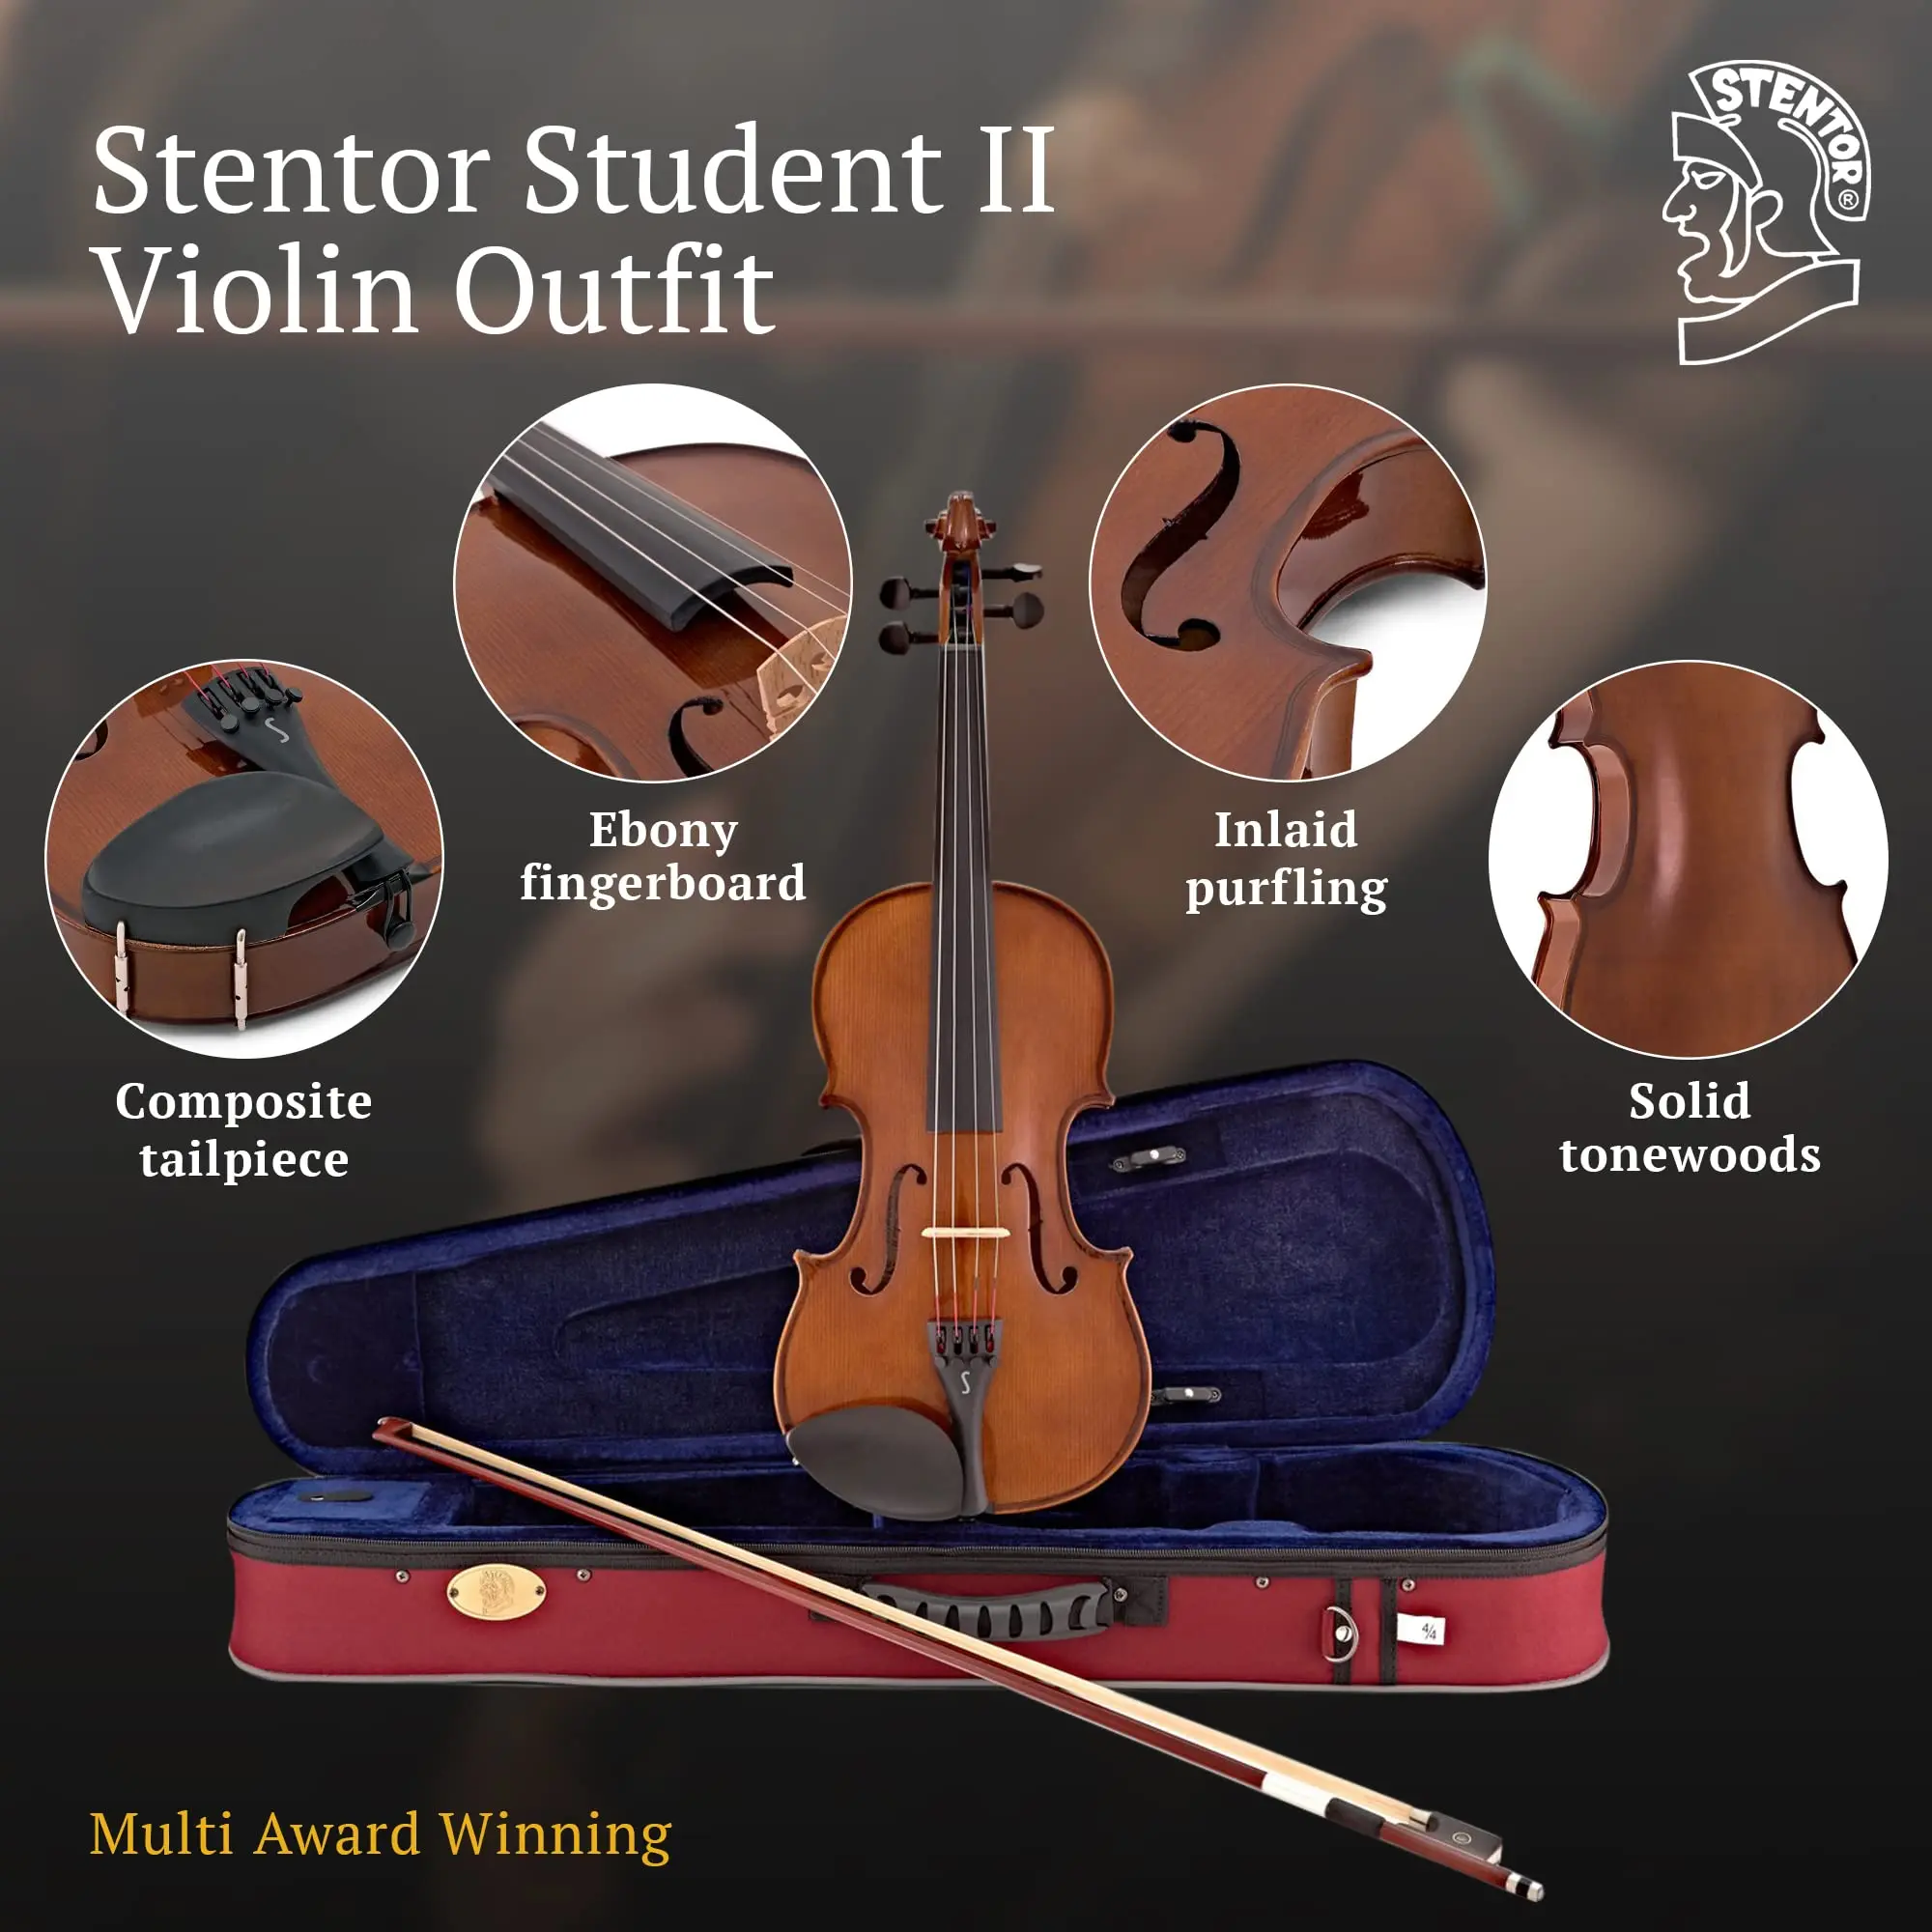 comprar violin stentor en colombia - Son buenos los violines Stentor